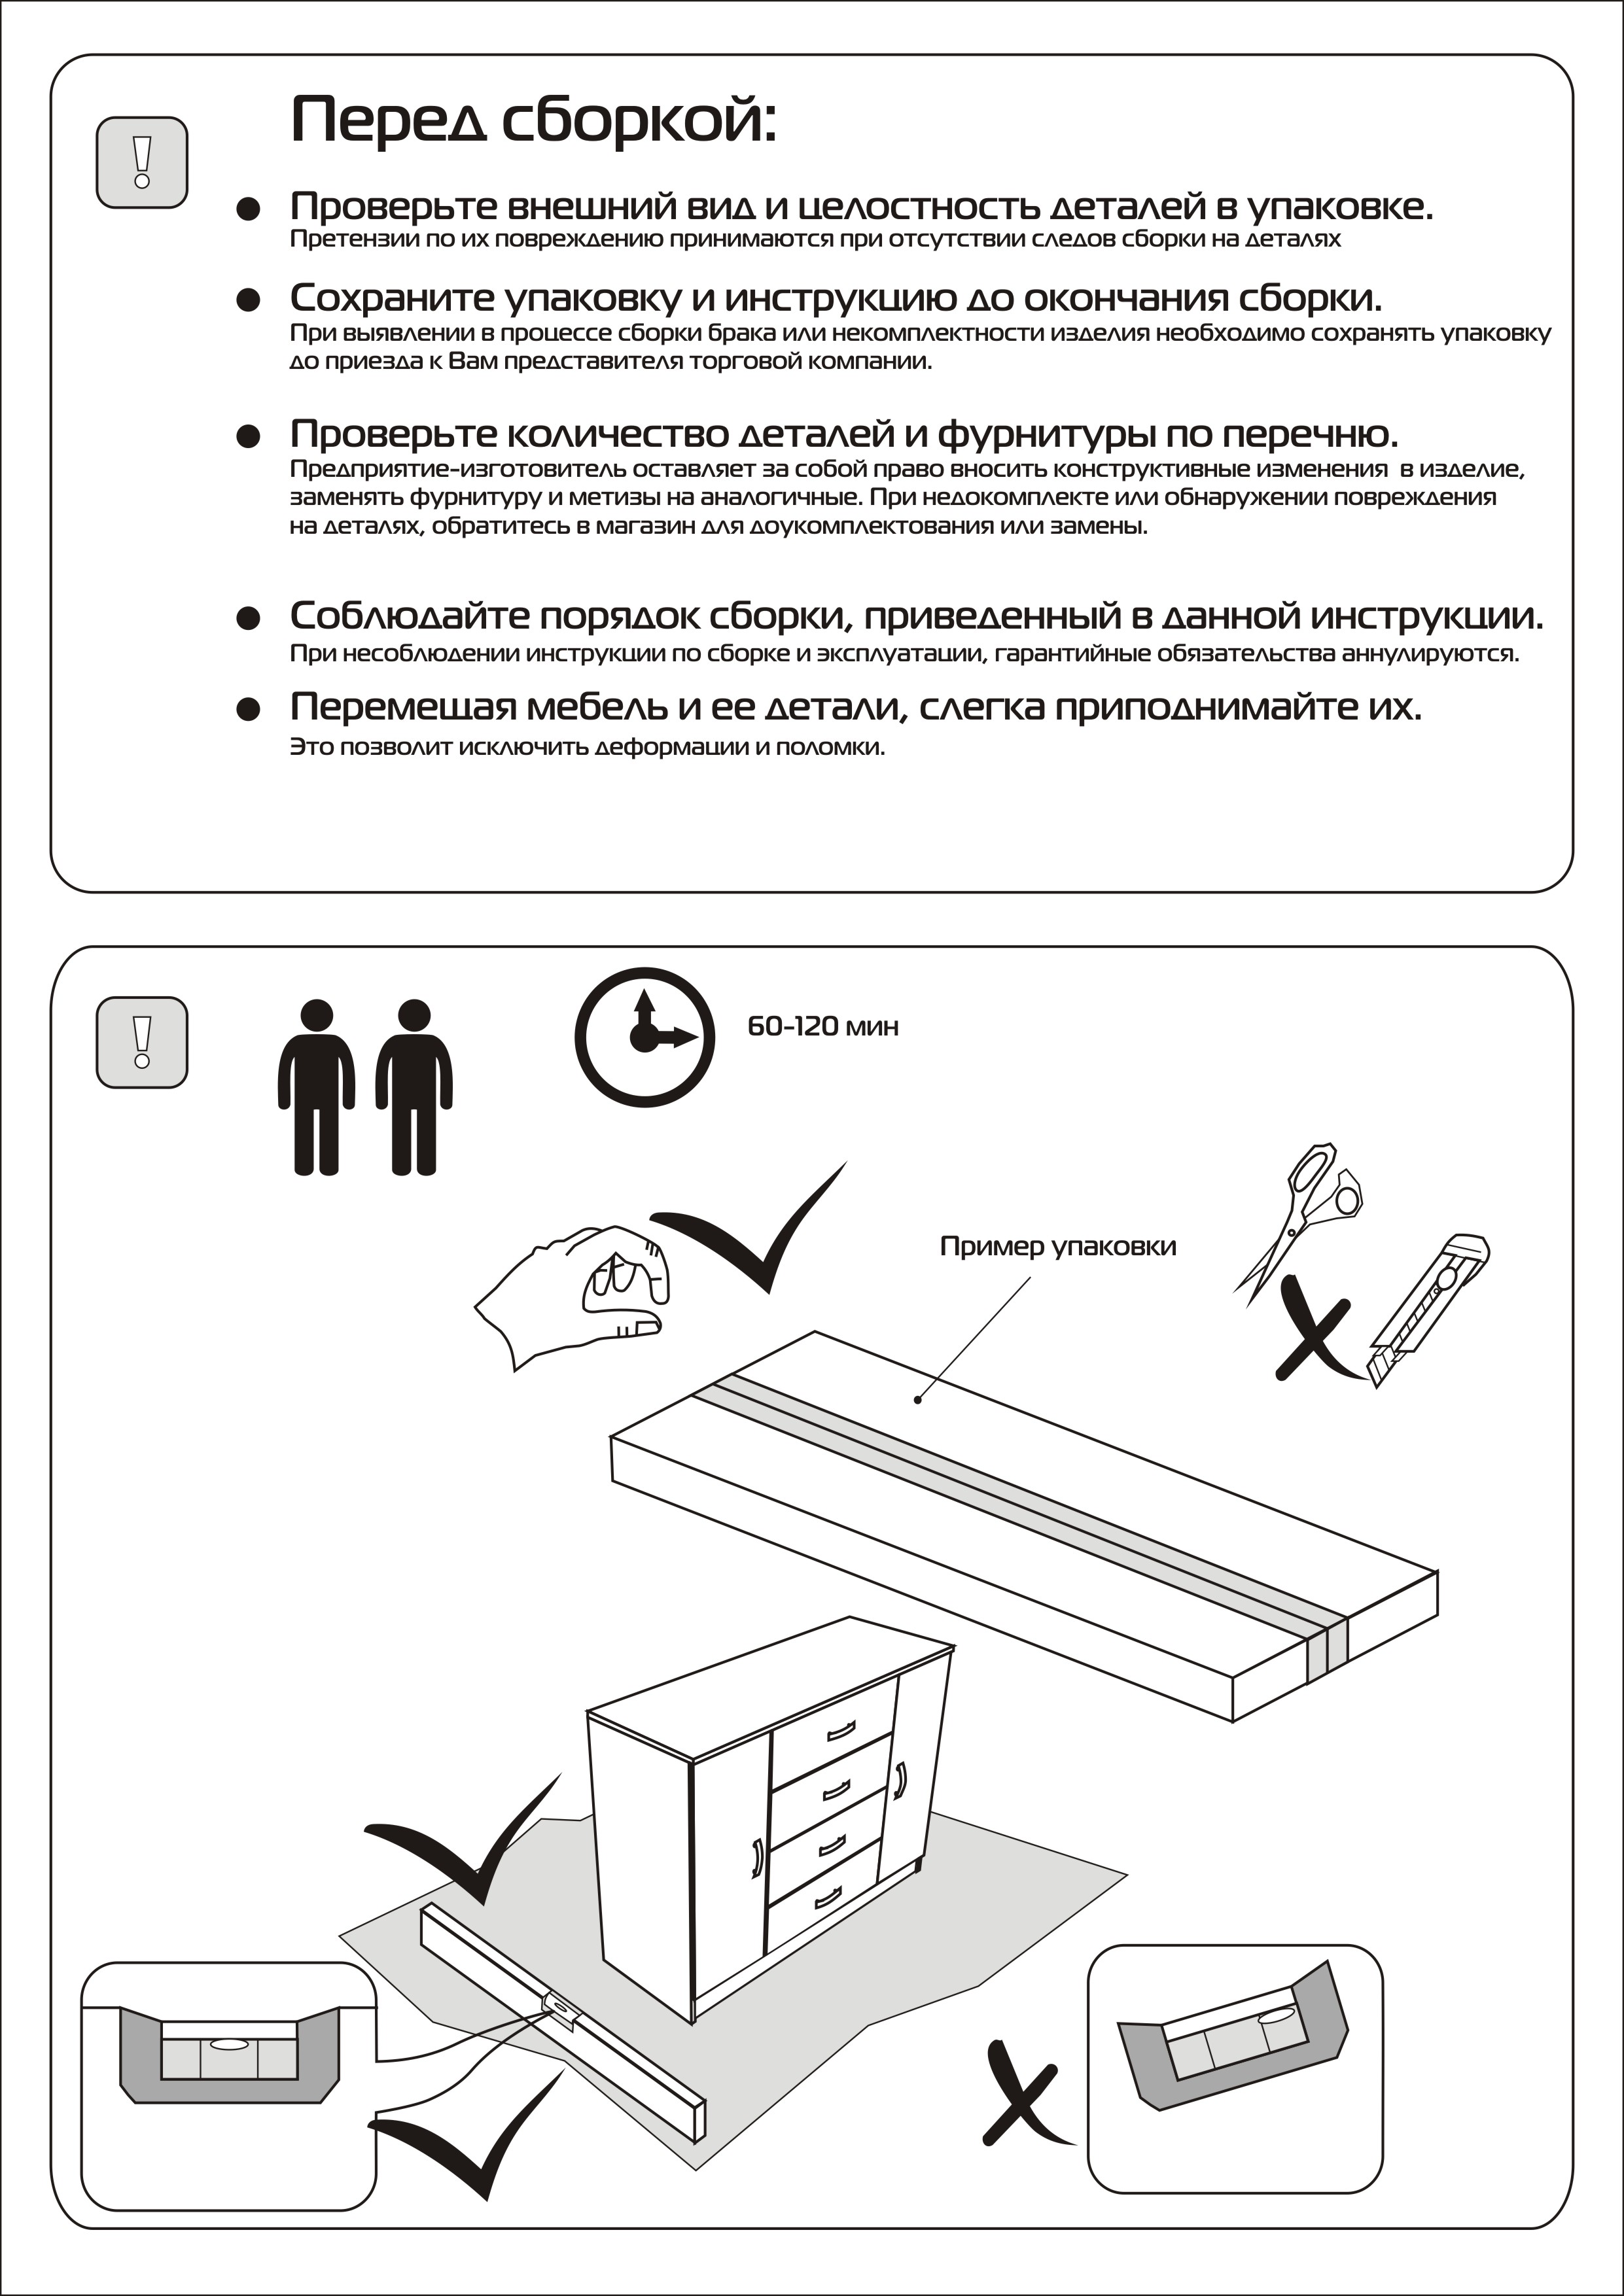 Создание инструкции по сборке мебели